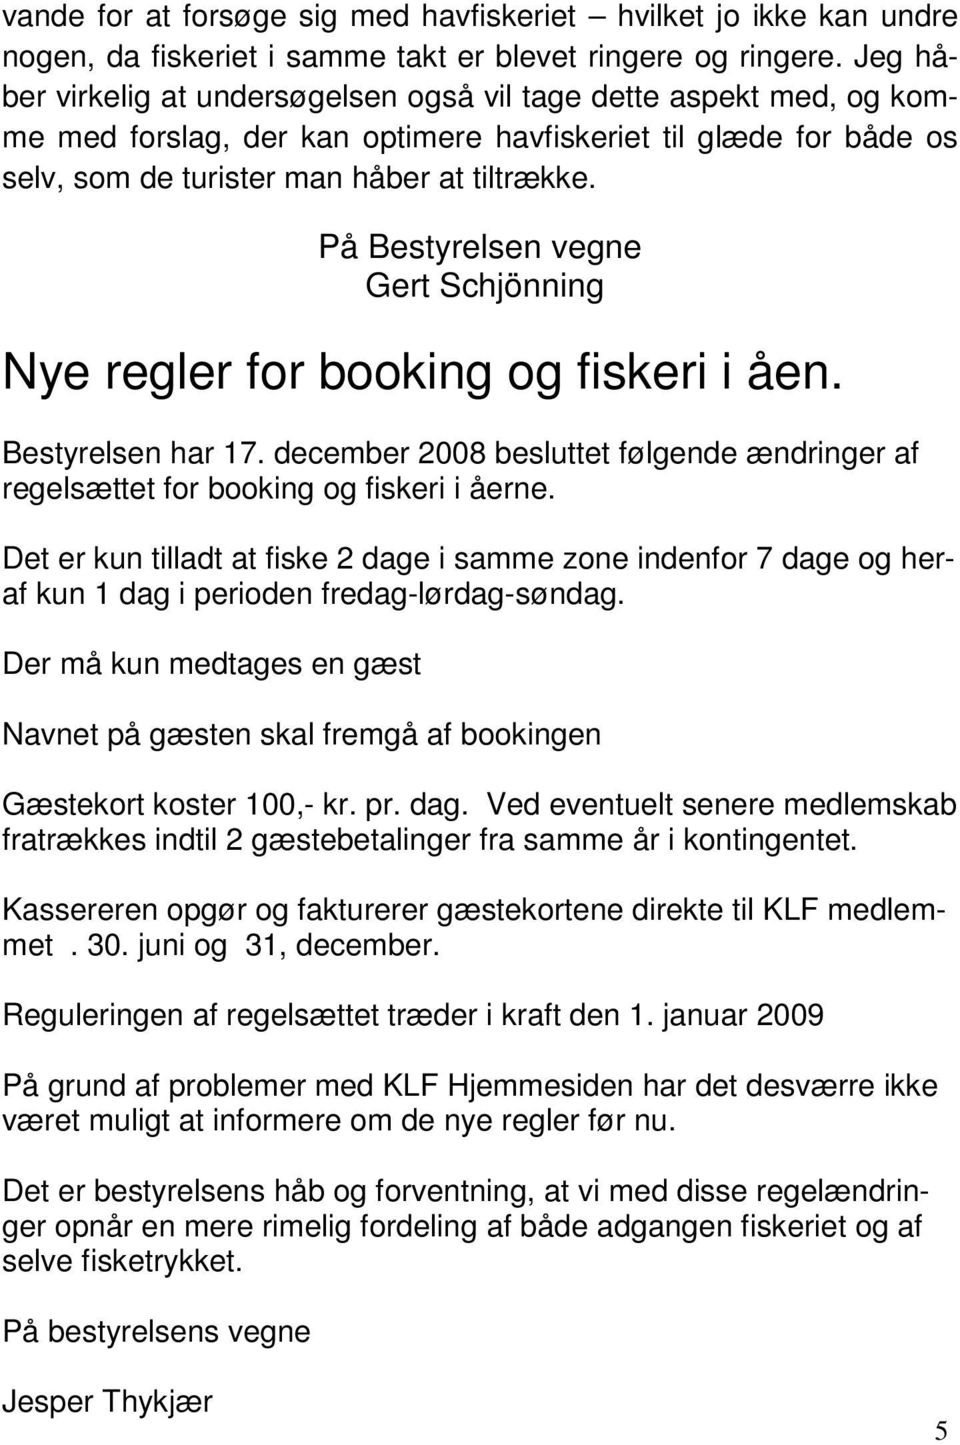 På Bestyrelsen vegne Gert Schjönning Nye regler for booking og fiskeri i åen. Bestyrelsen har 17. december 2008 besluttet følgende ændringer af regelsættet for booking og fiskeri i åerne.